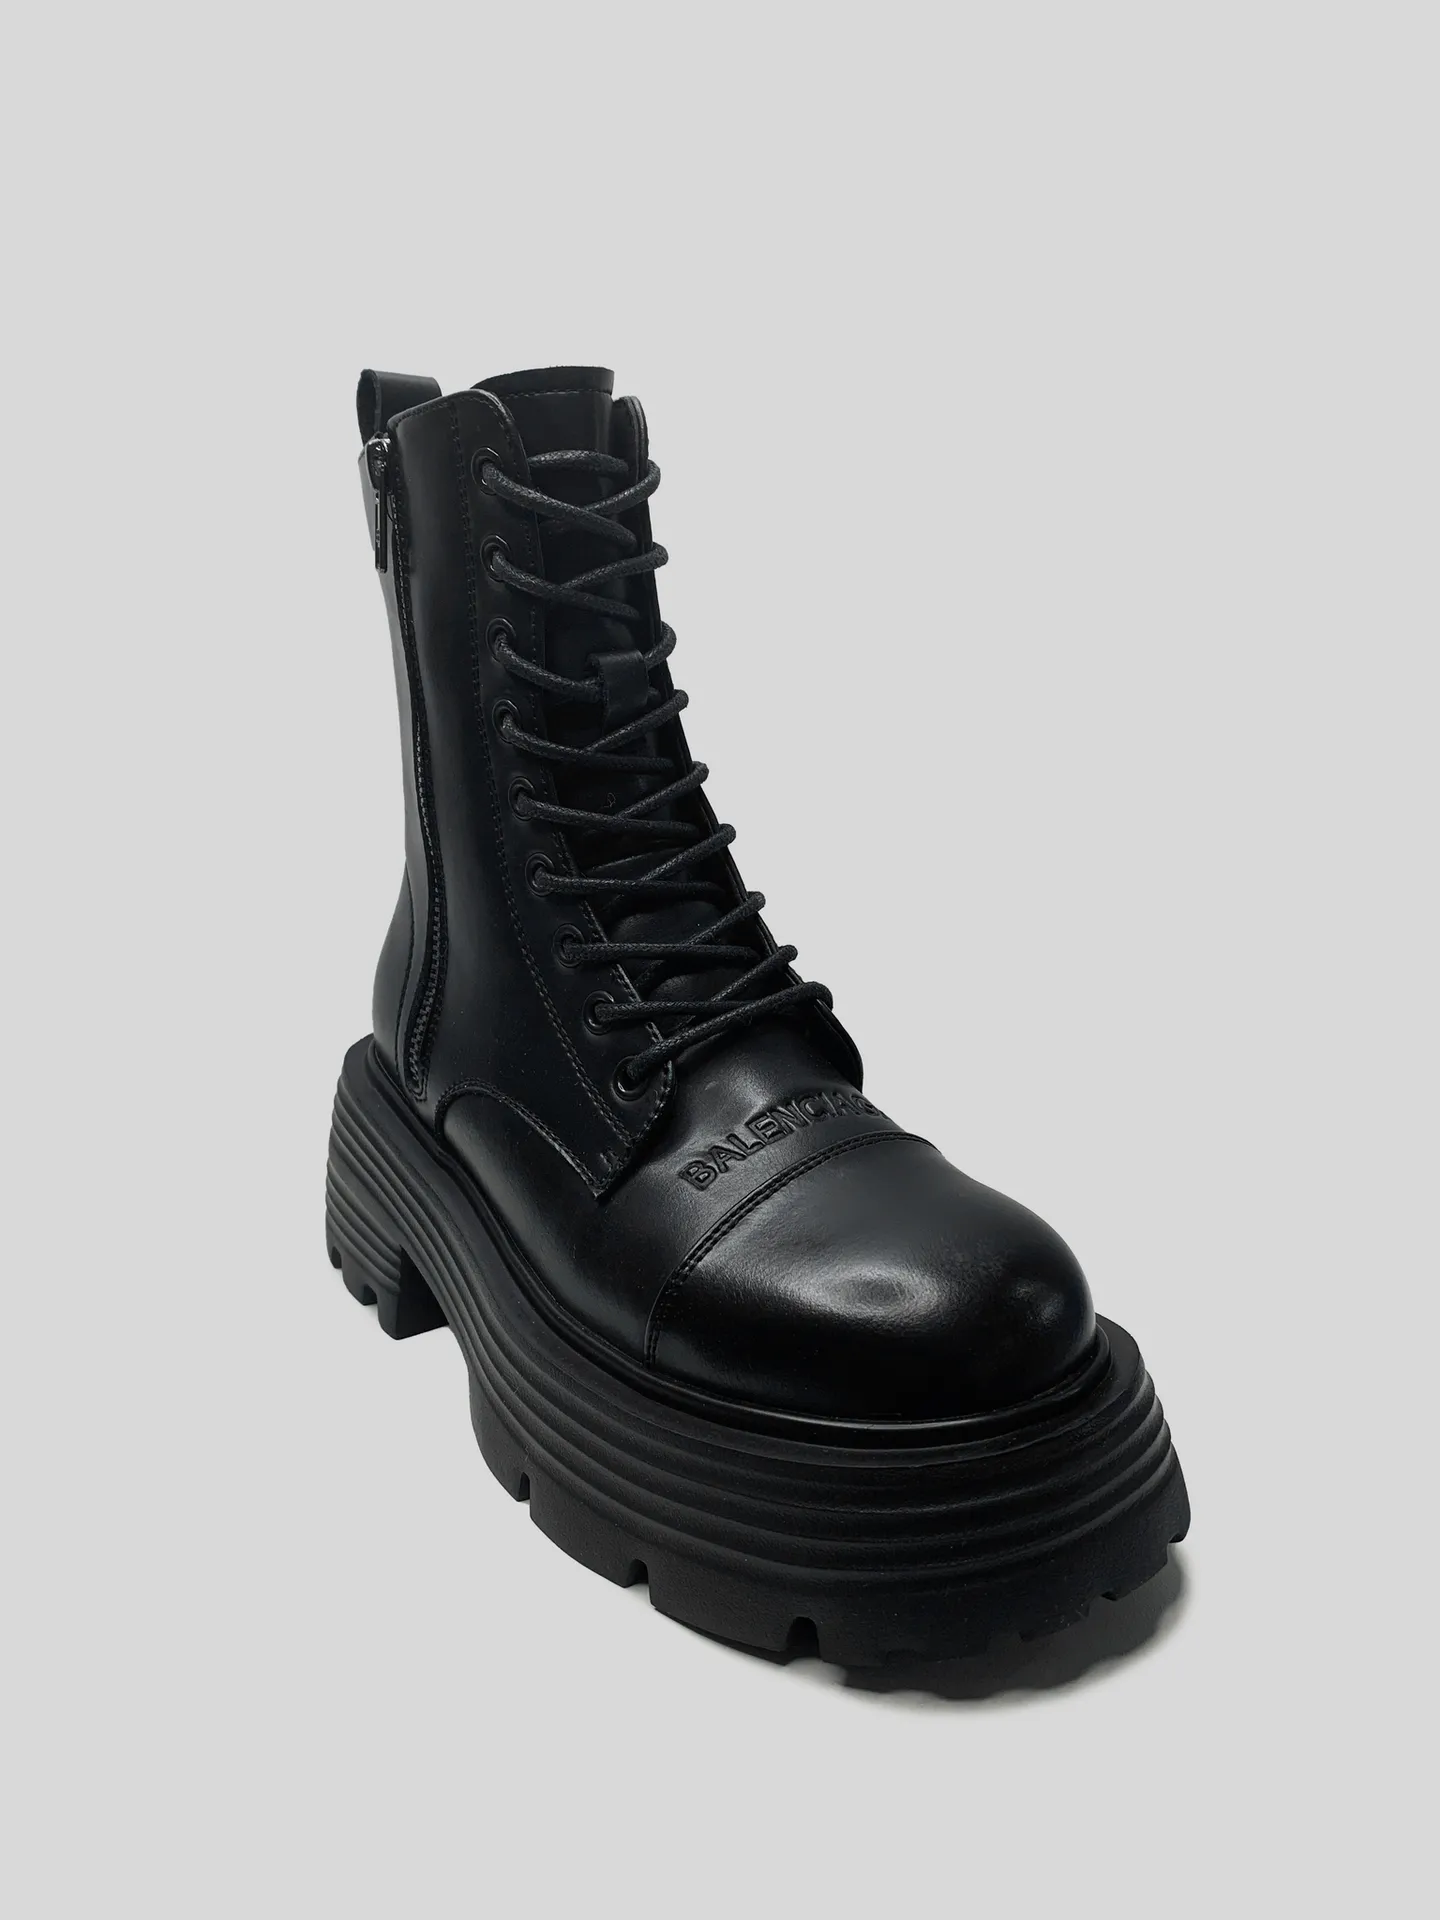 Ботинки Balenciaga черные кожаные со шнуровкой оптом